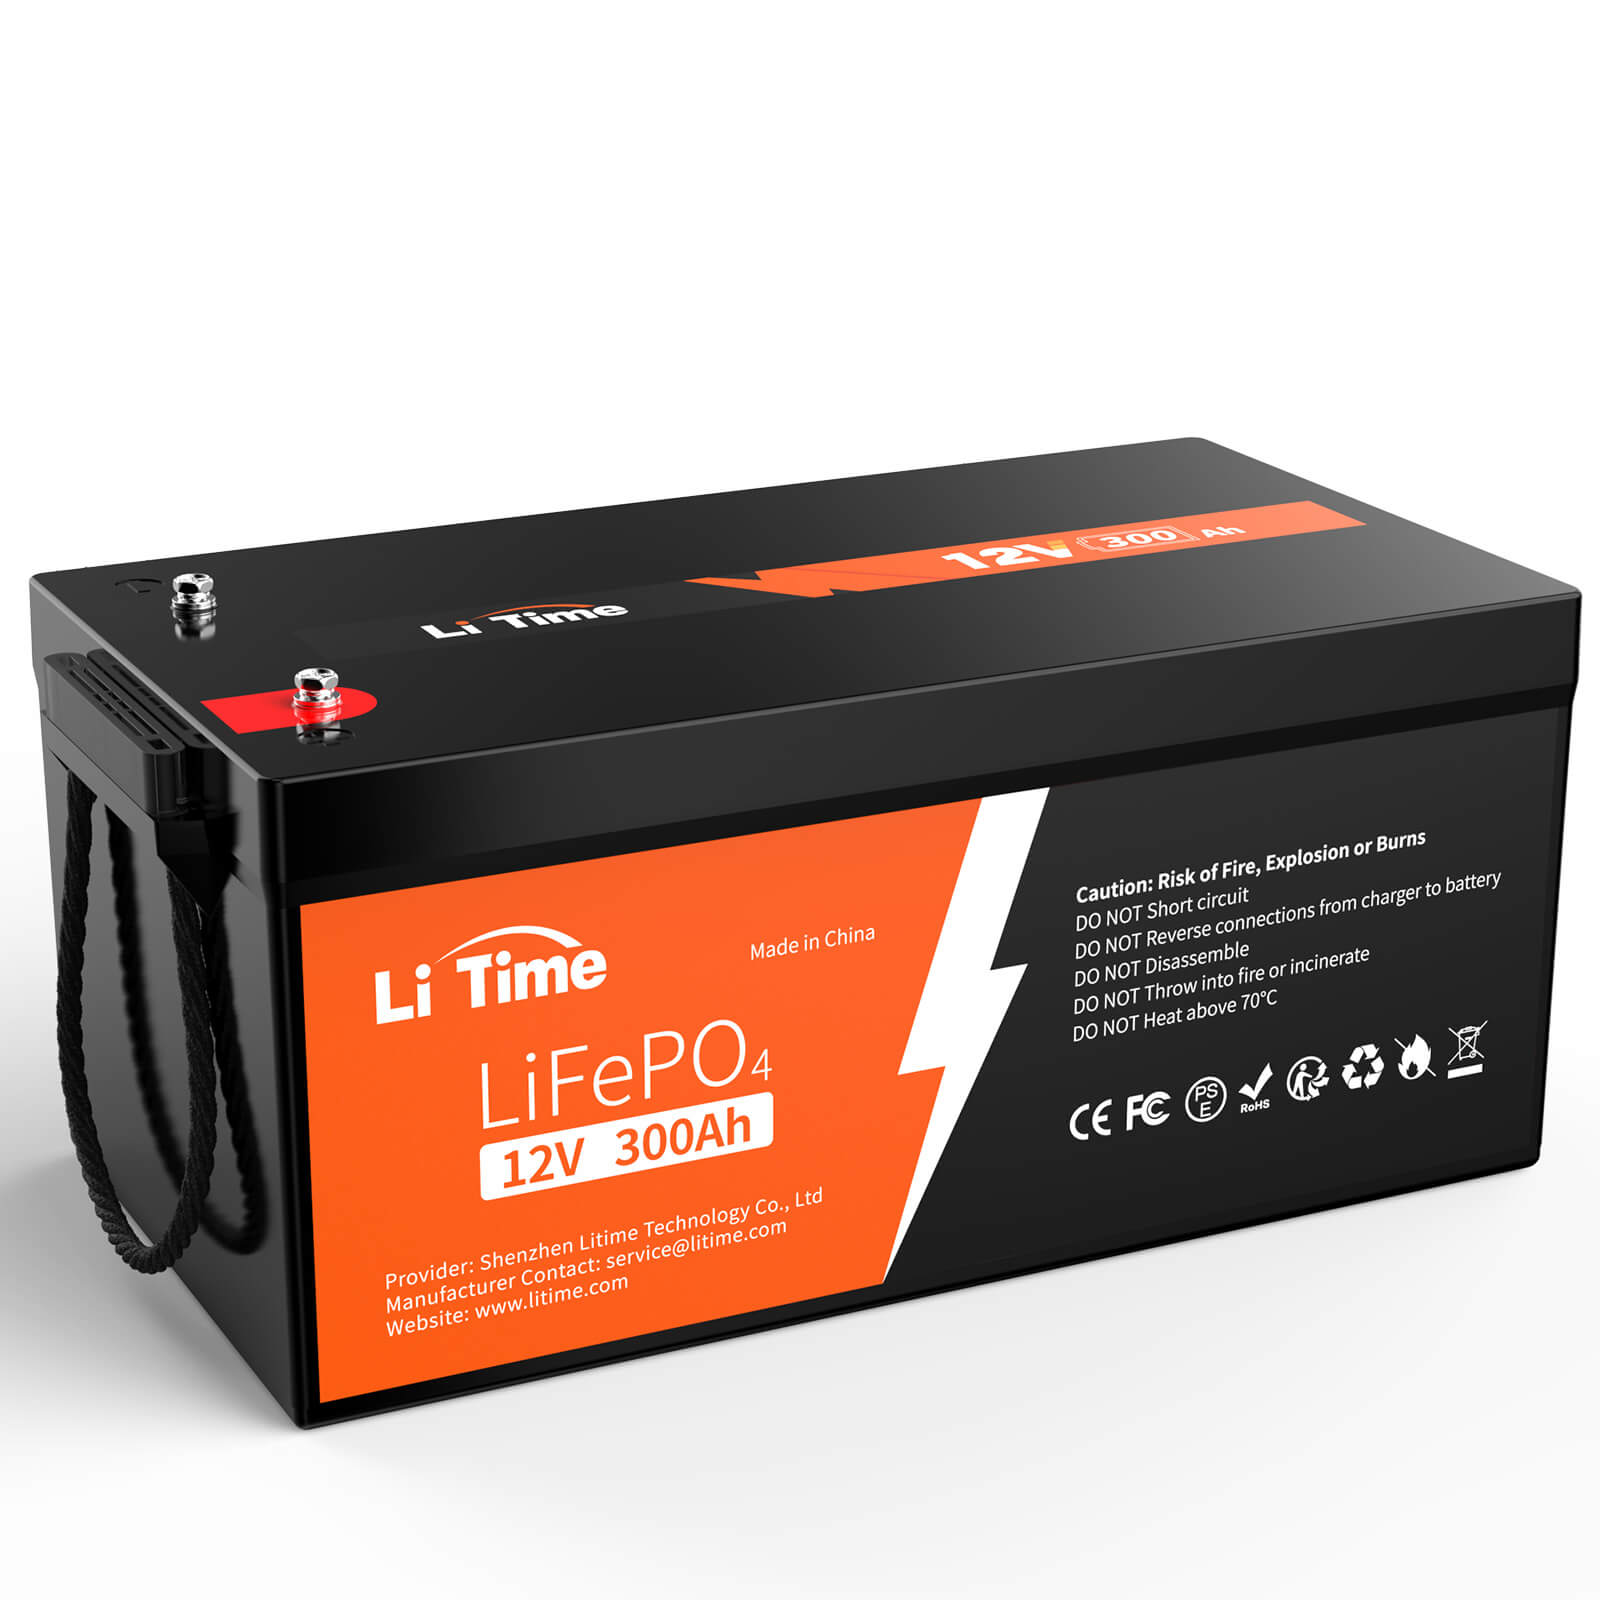 LiTime 12V 300Ah Lithium LiFePO4 Batterie- 100% sauberere Energie & Sparen Sie 1/2 Stromkosten